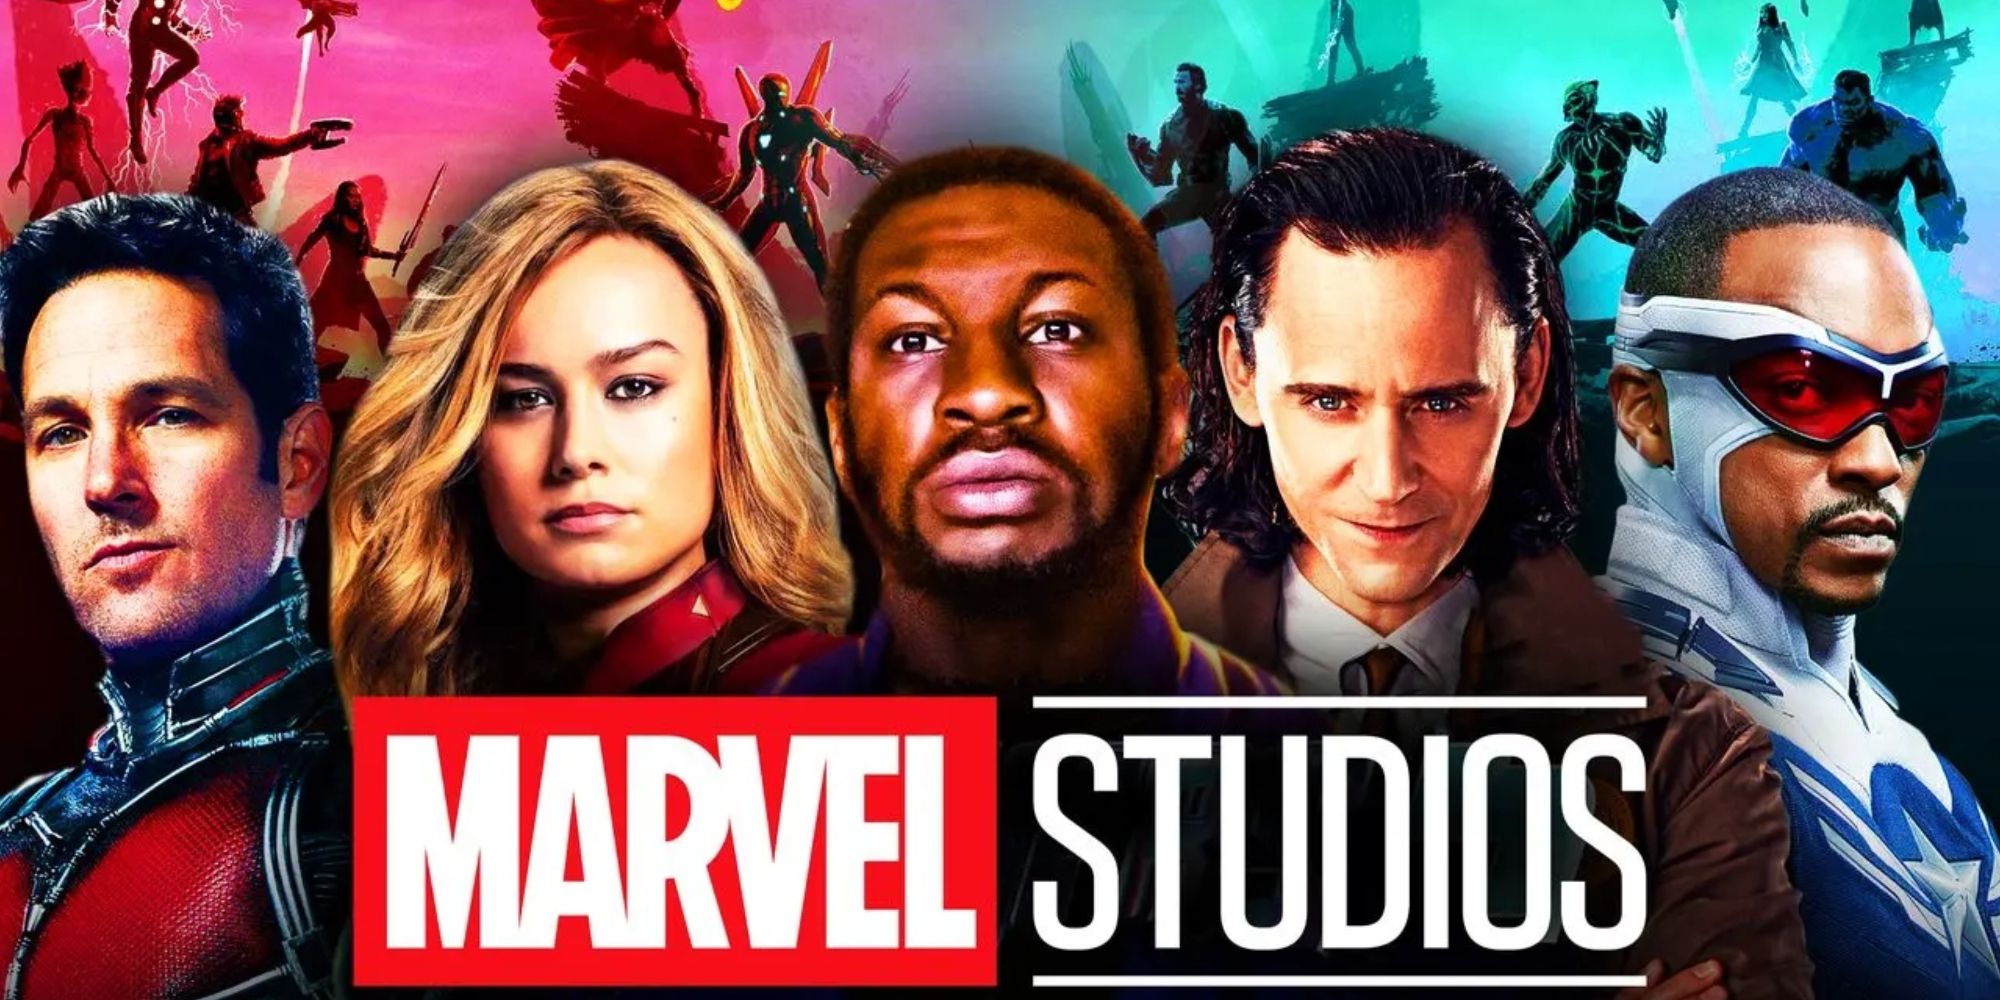 The Marvels Cast: Disney Announces 10 Main Actors